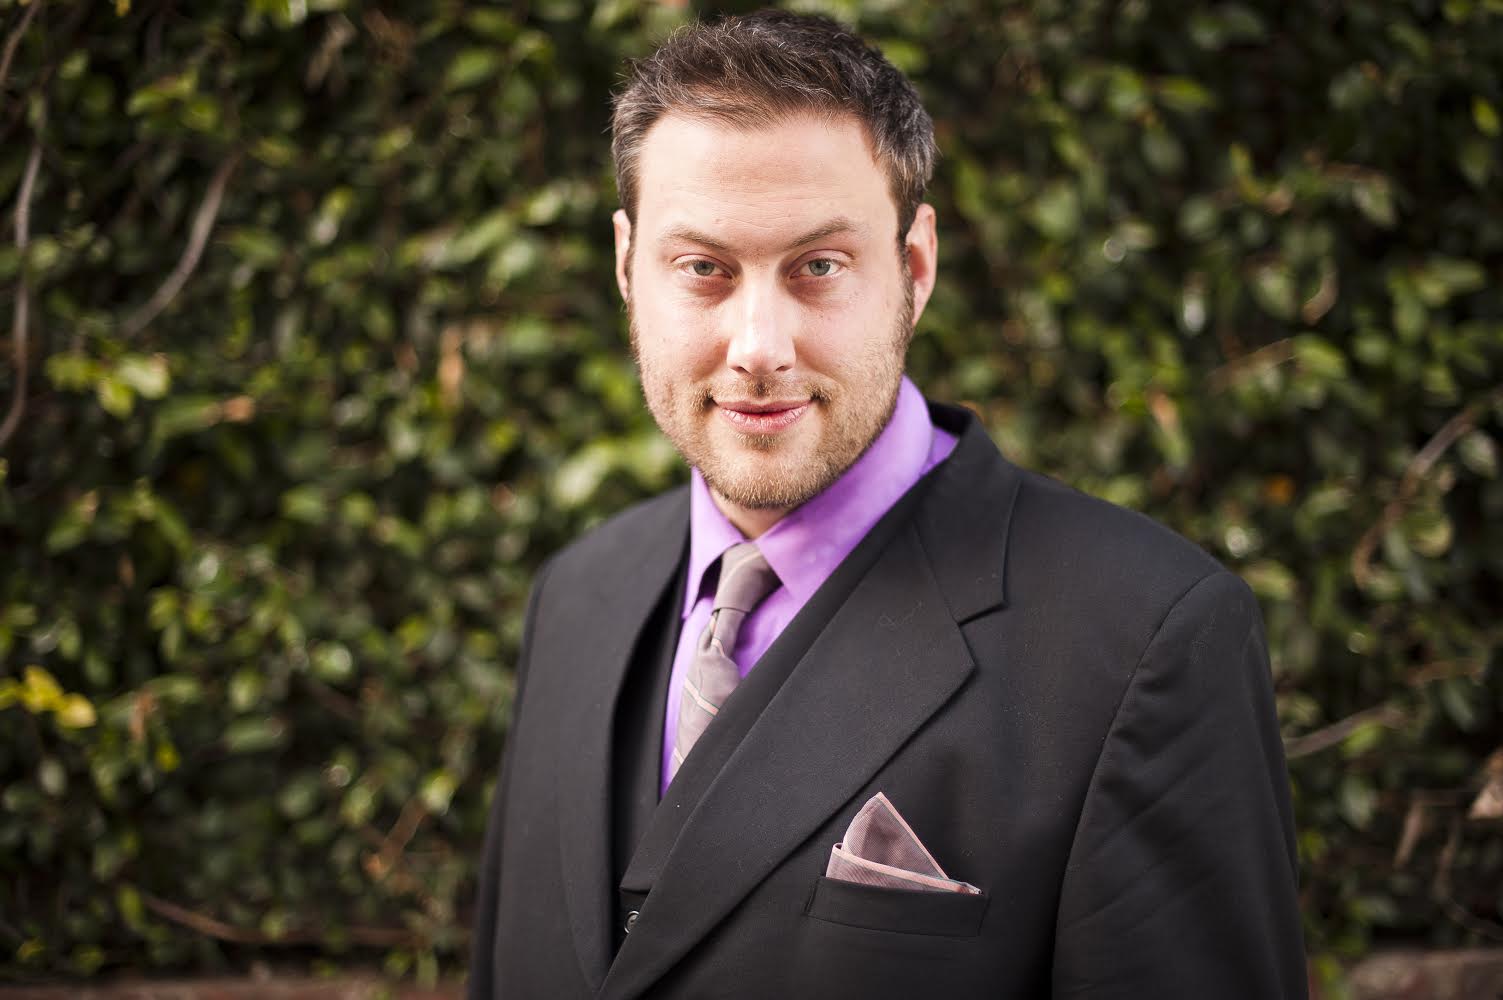 Andrew Mcgregor - Filmmaker, inventor, writer, chessboxing champion and entrepreneur